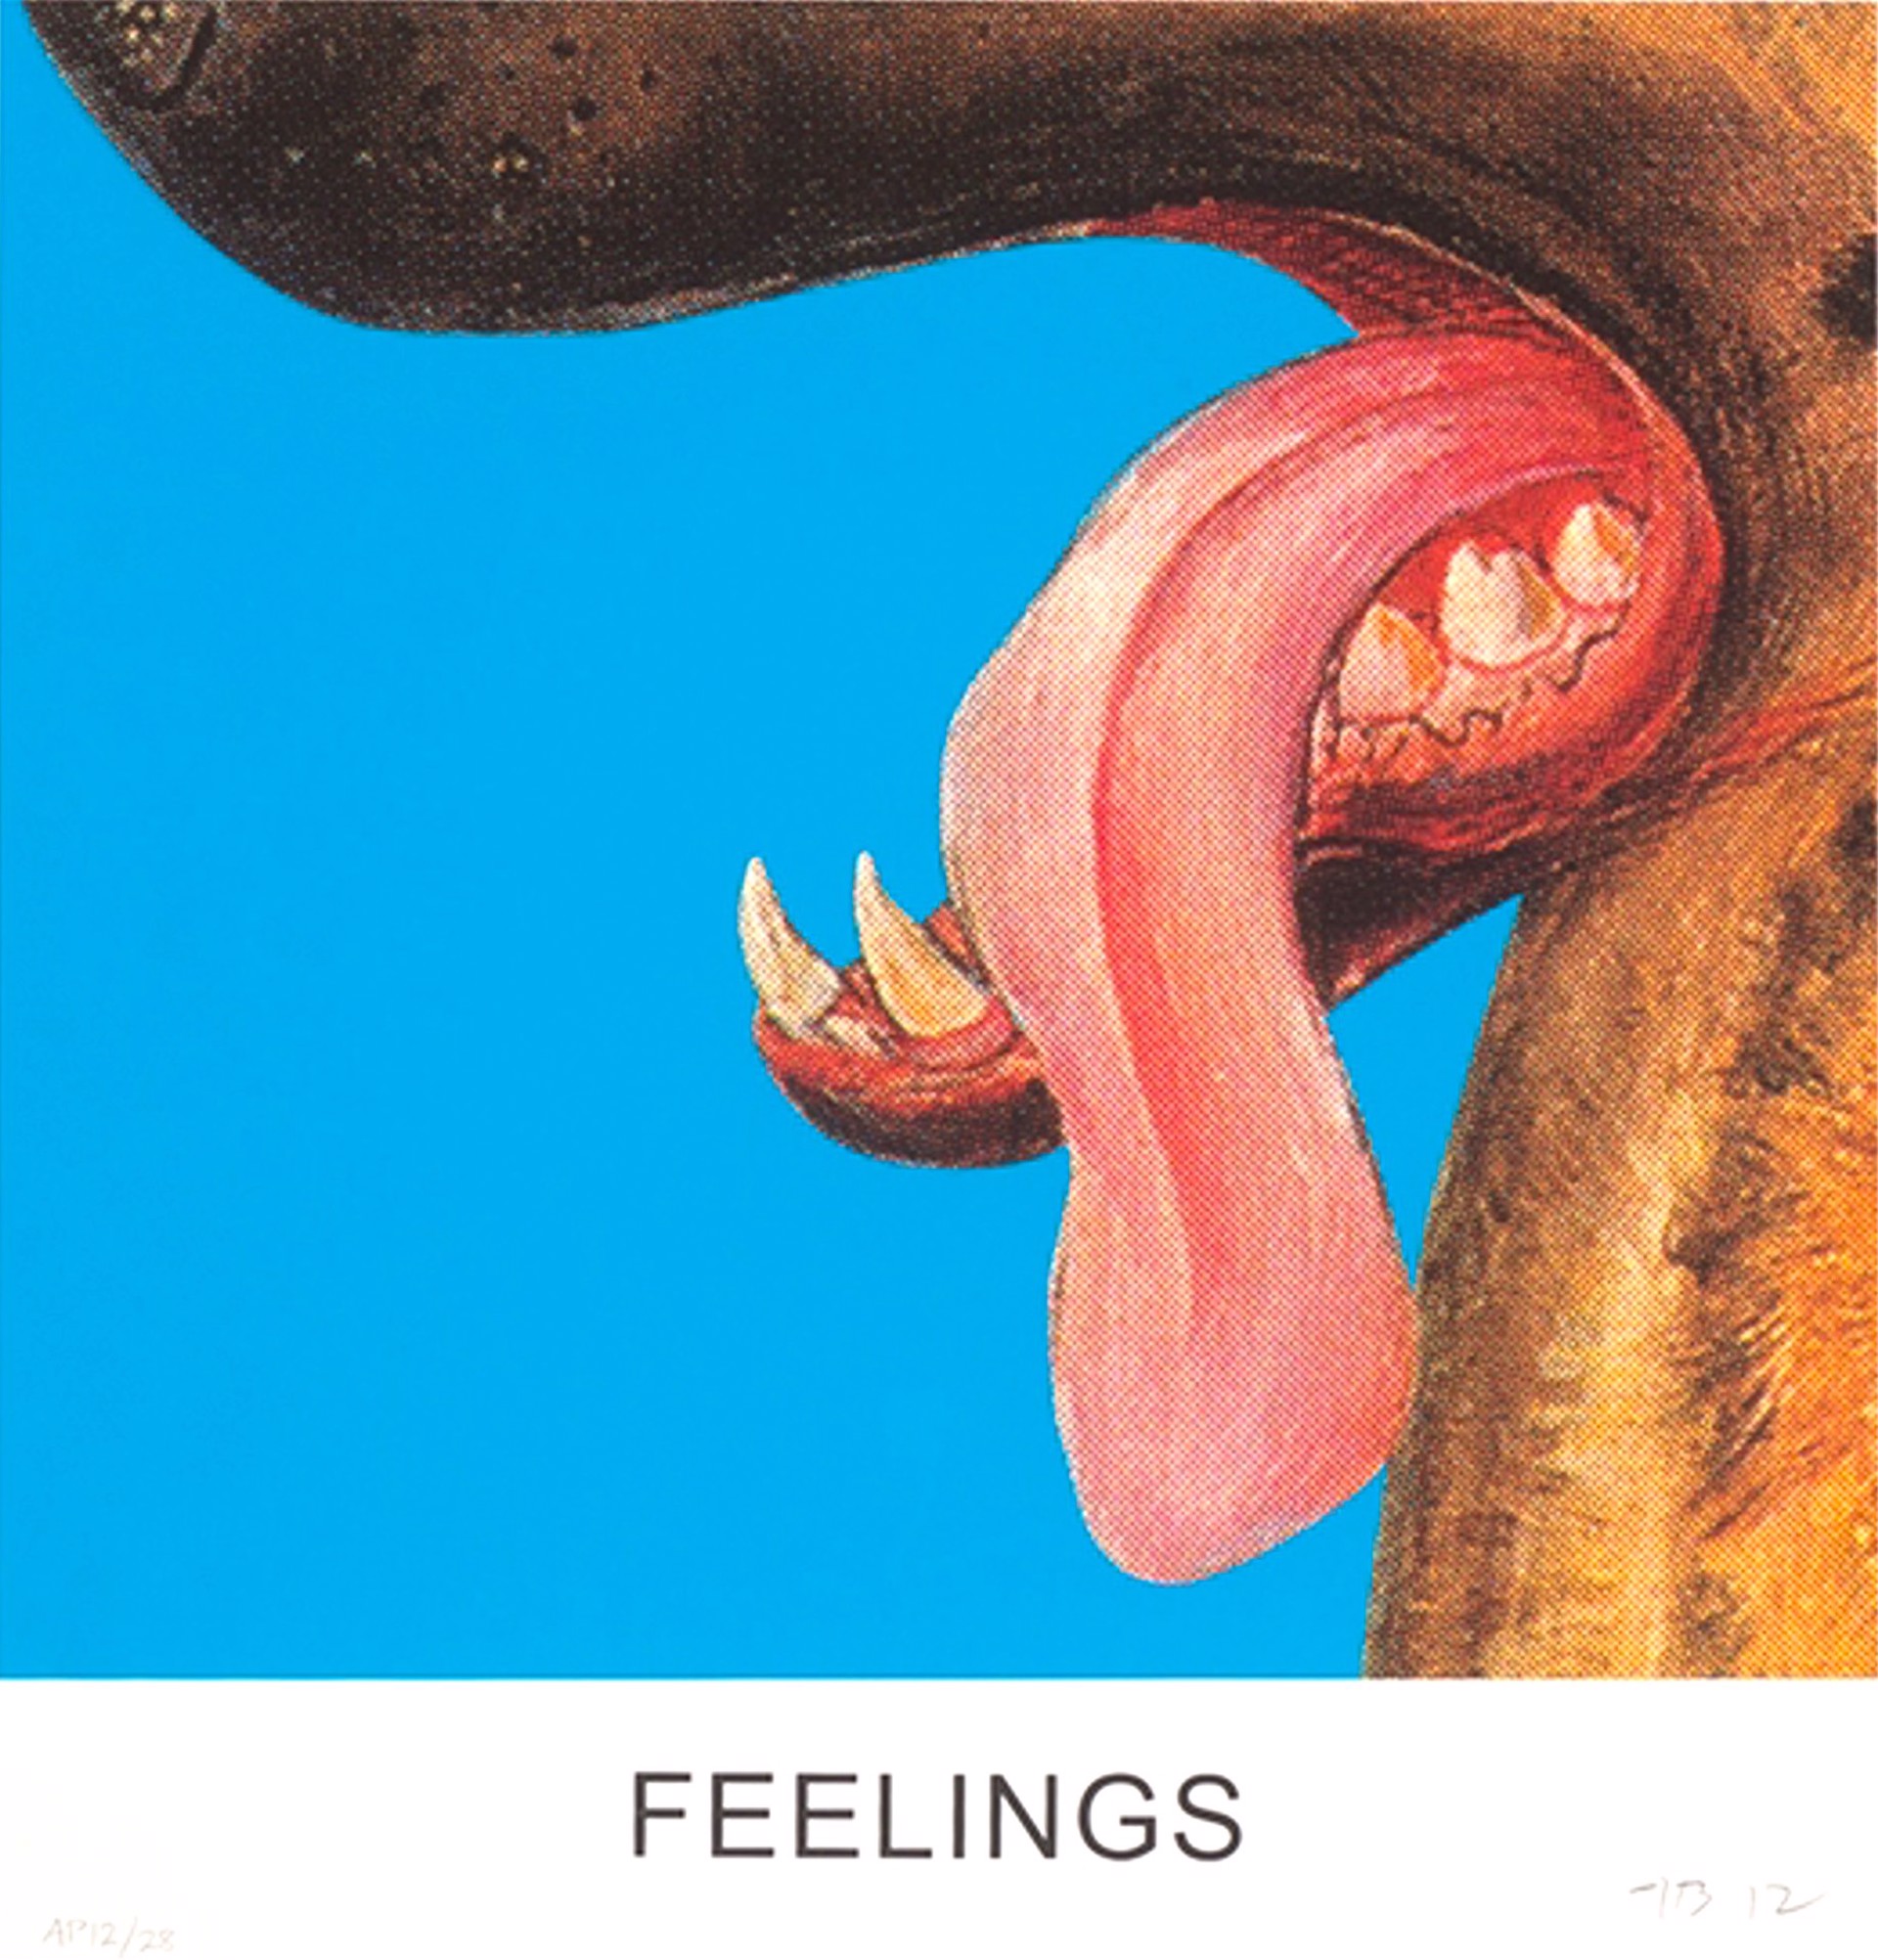 Double Play: Feelings by John Baldessari